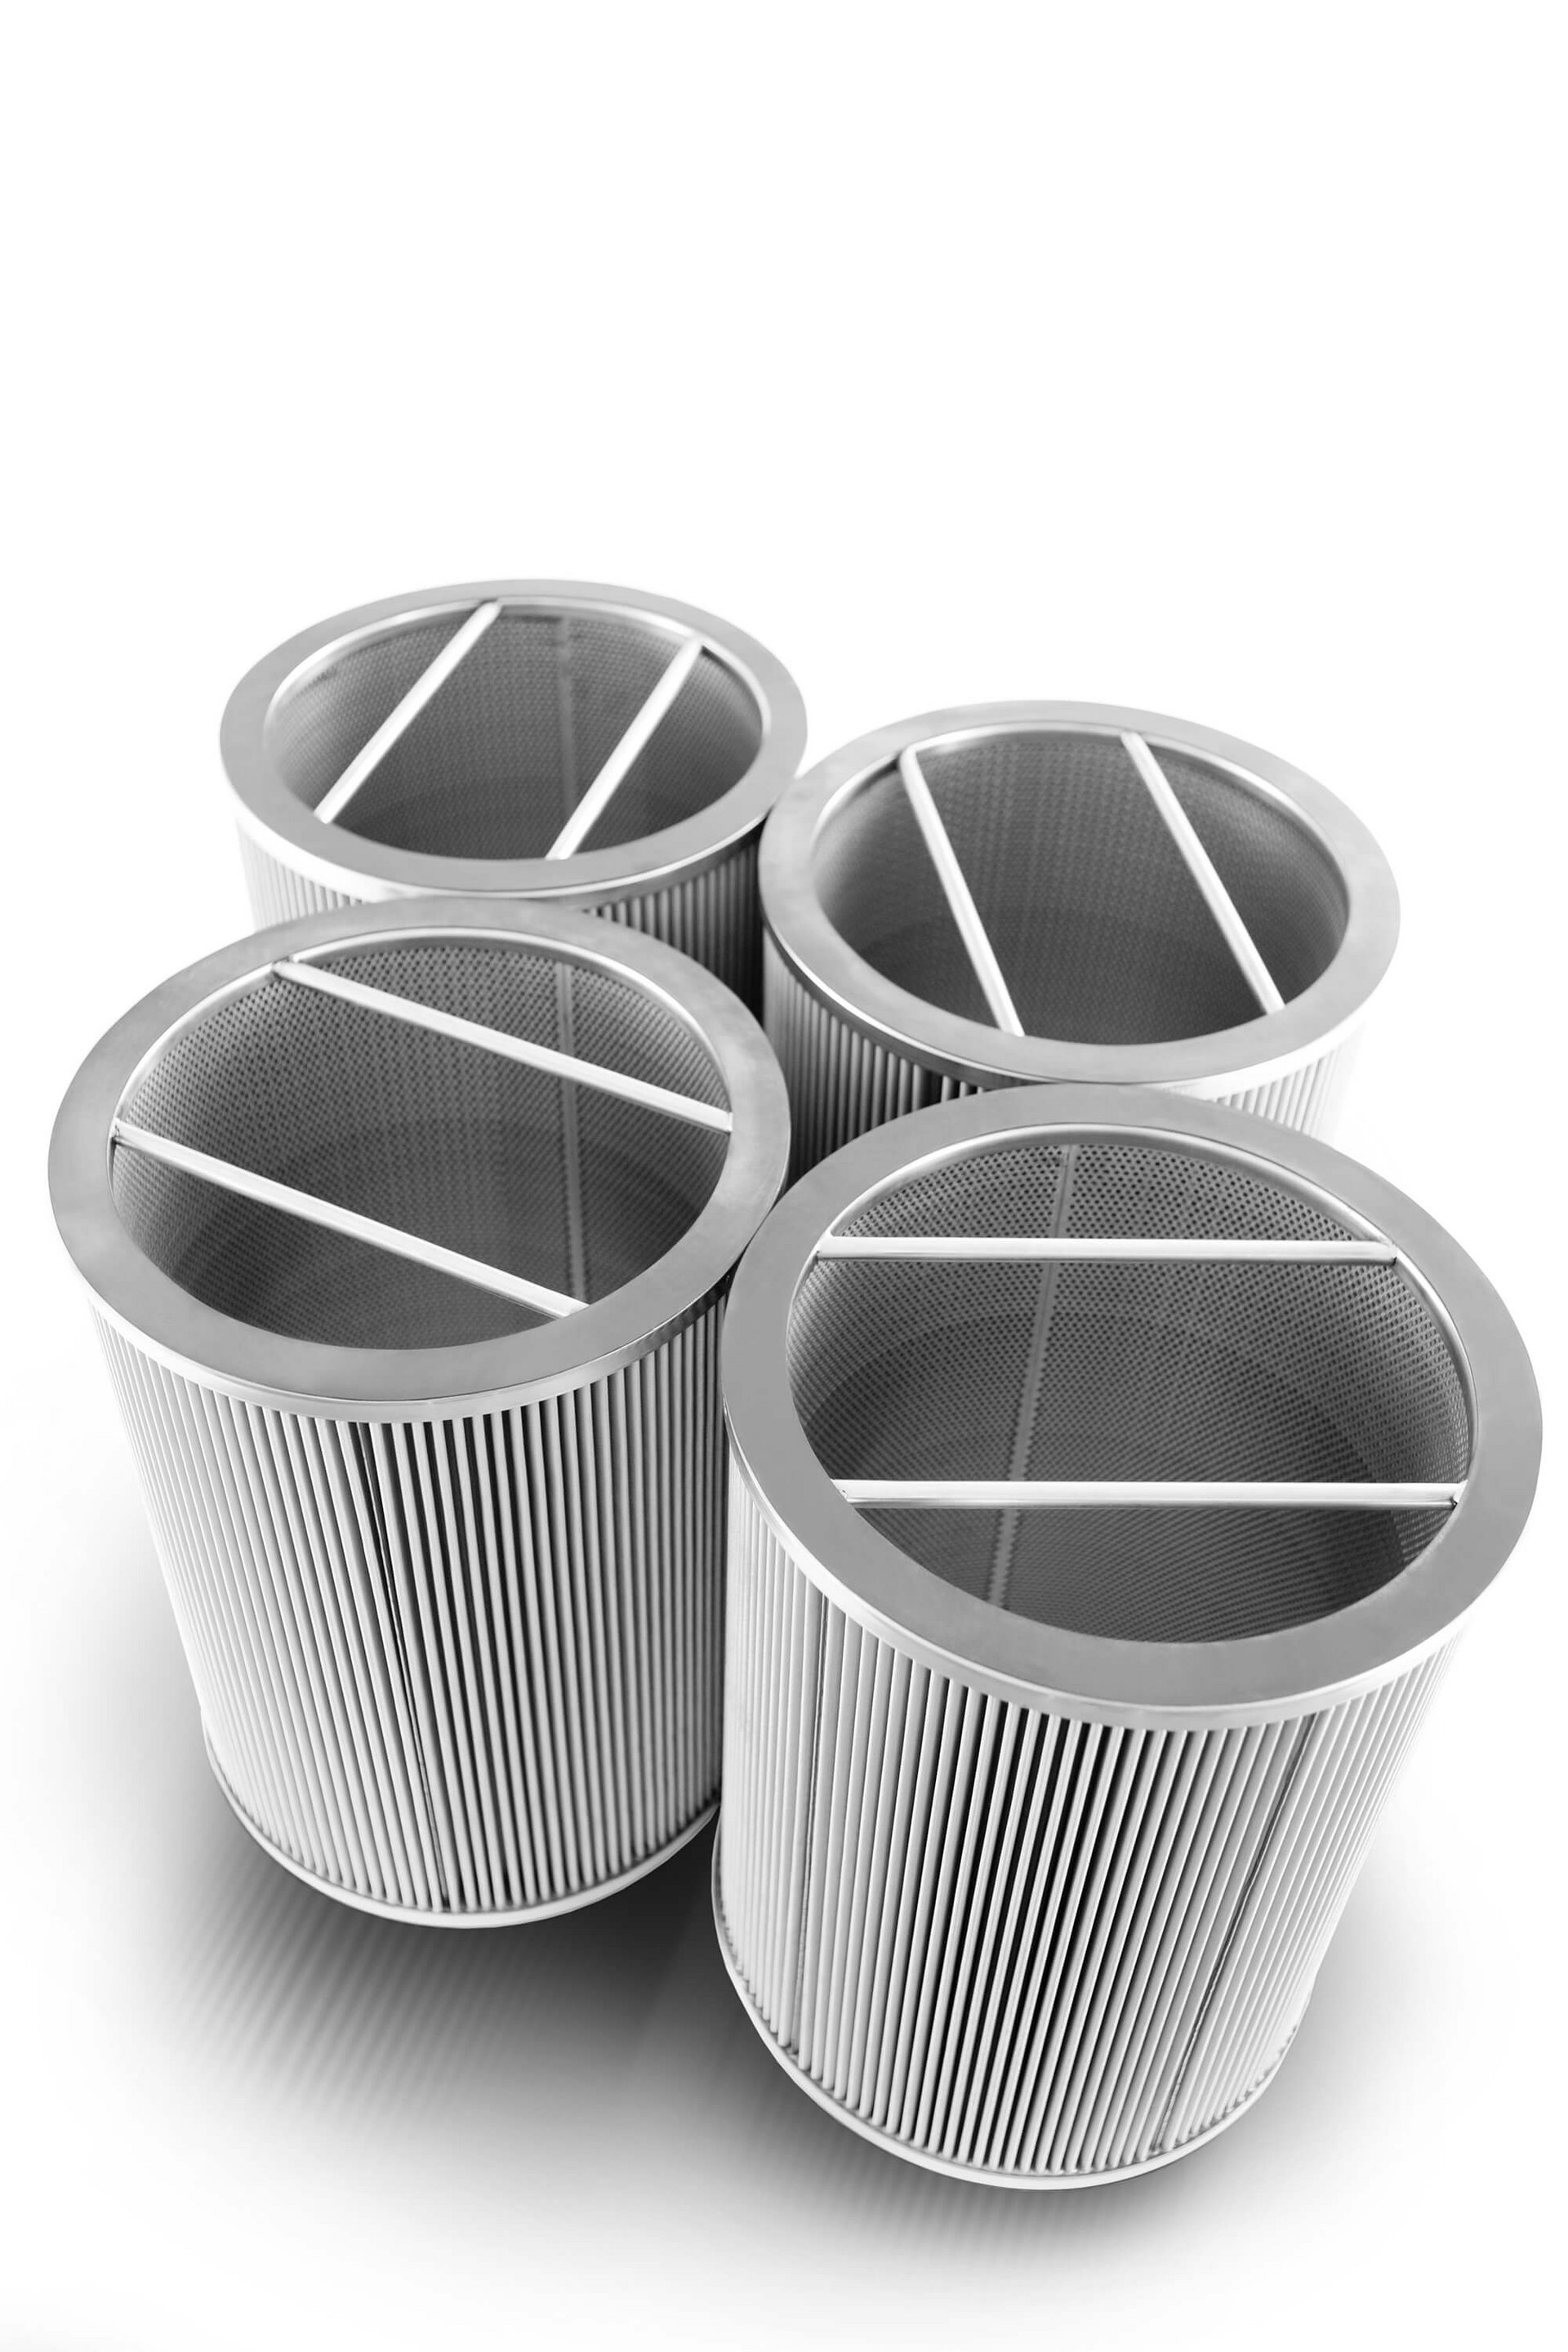 Filterkerzen mit Metalldrahtgewebe von Bode Solutions – für präzise Filtration.